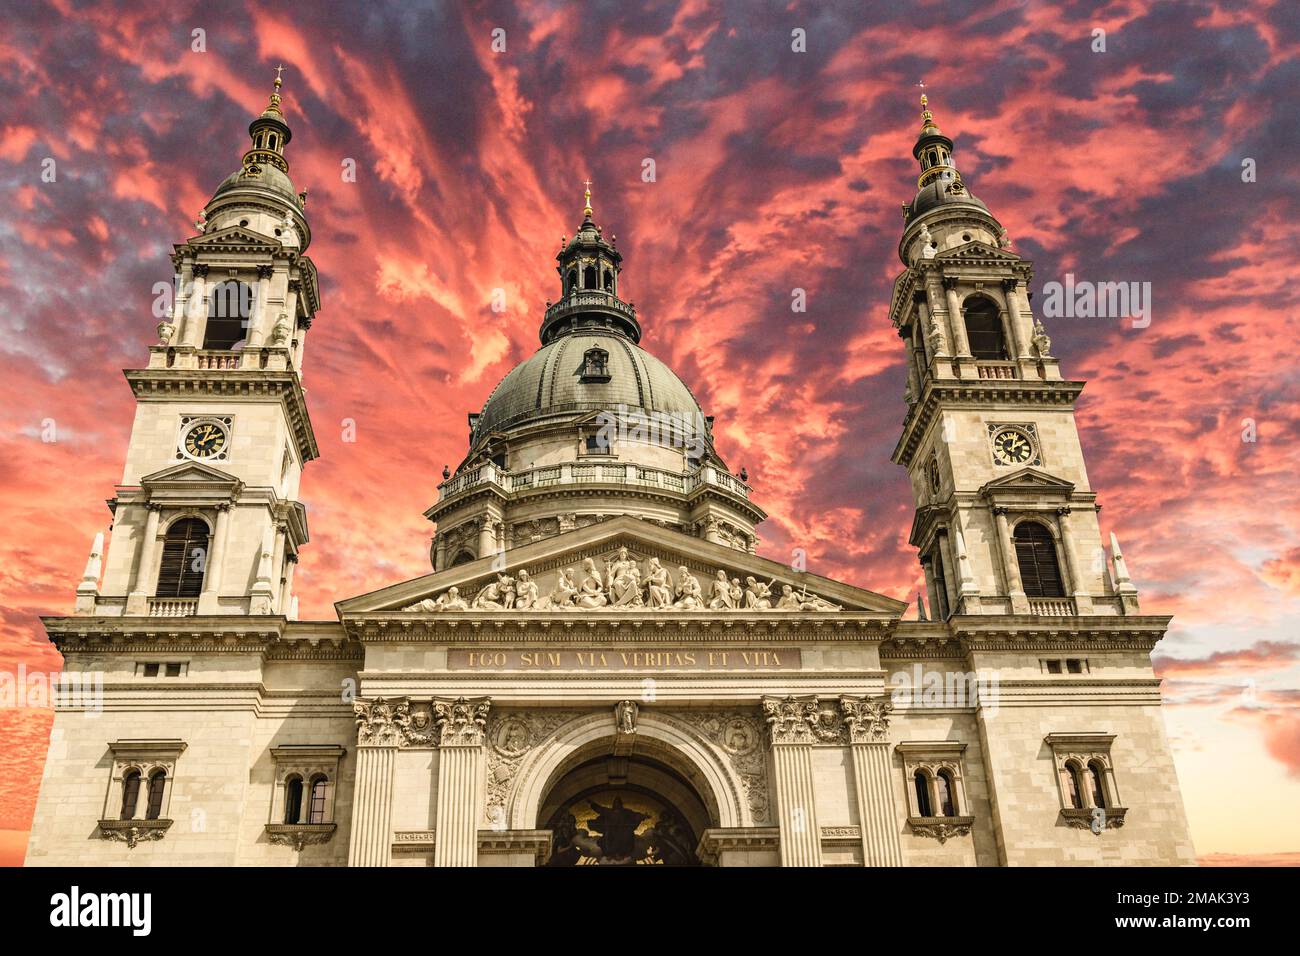 Uno degli edifici più importanti della chiesa ungherese, la Basilica di Santo Stefano a Budapest, con un suggestivo cielo rosso Foto Stock